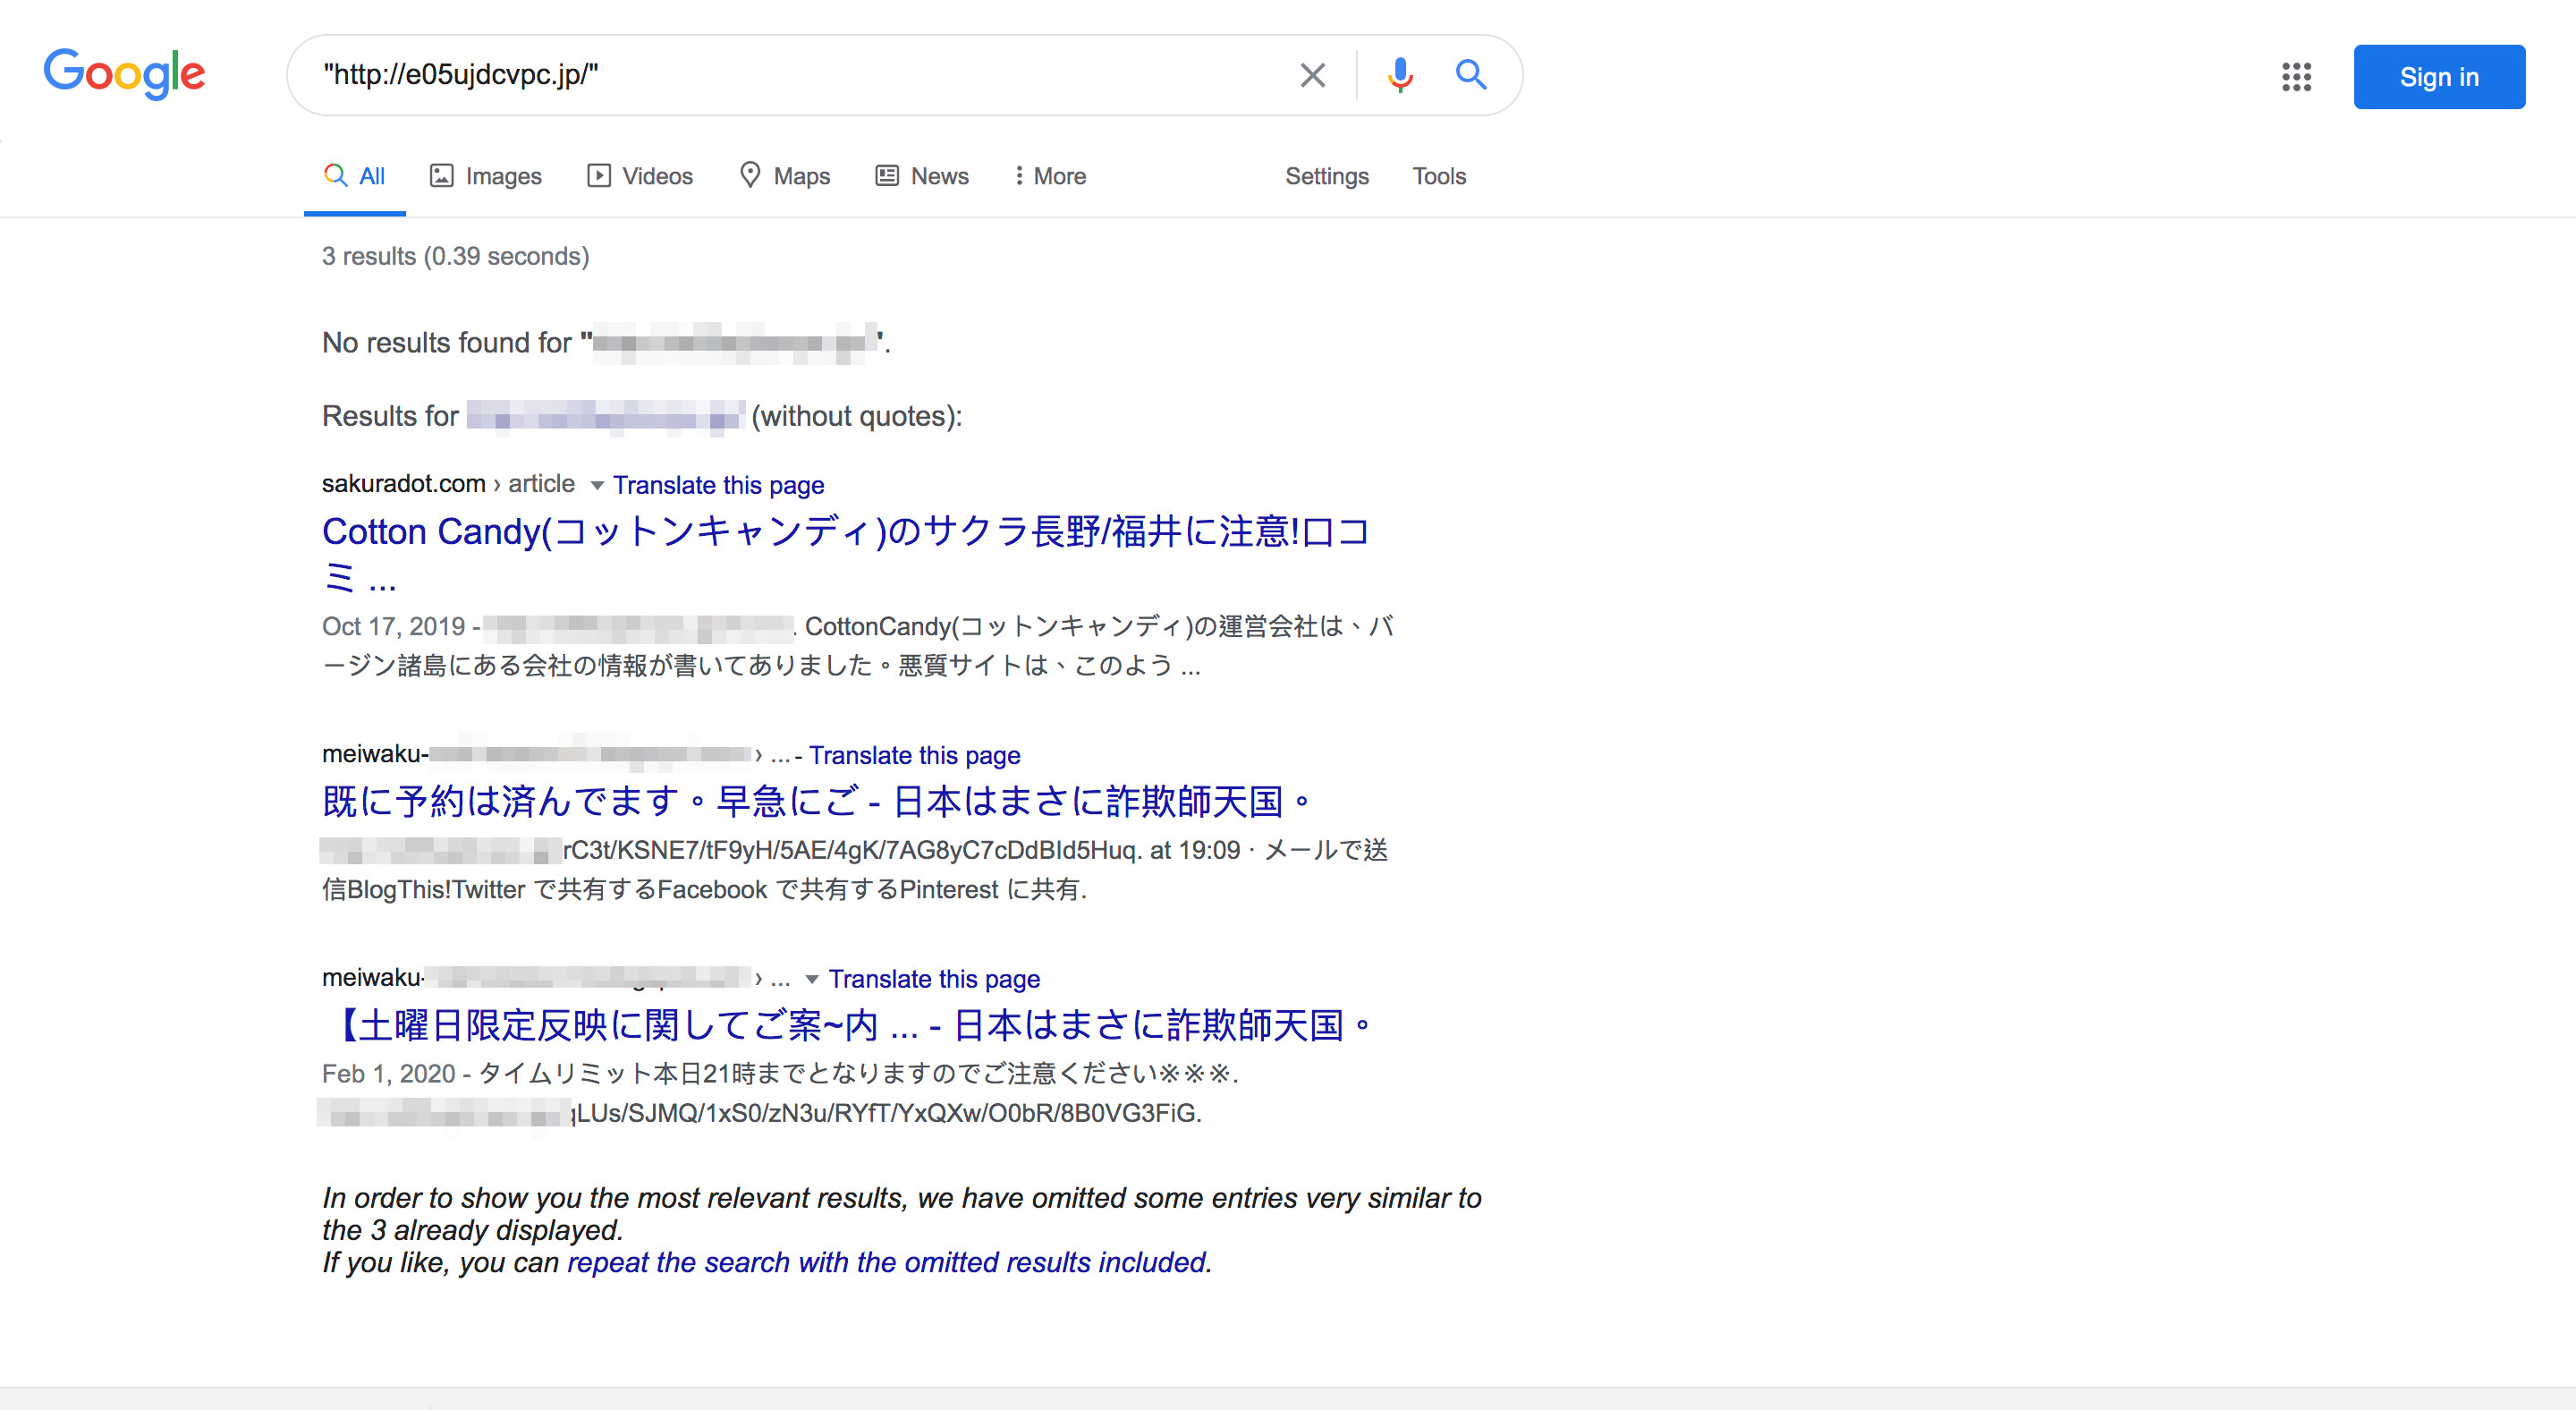 交友網站誘騙日本男性用戶